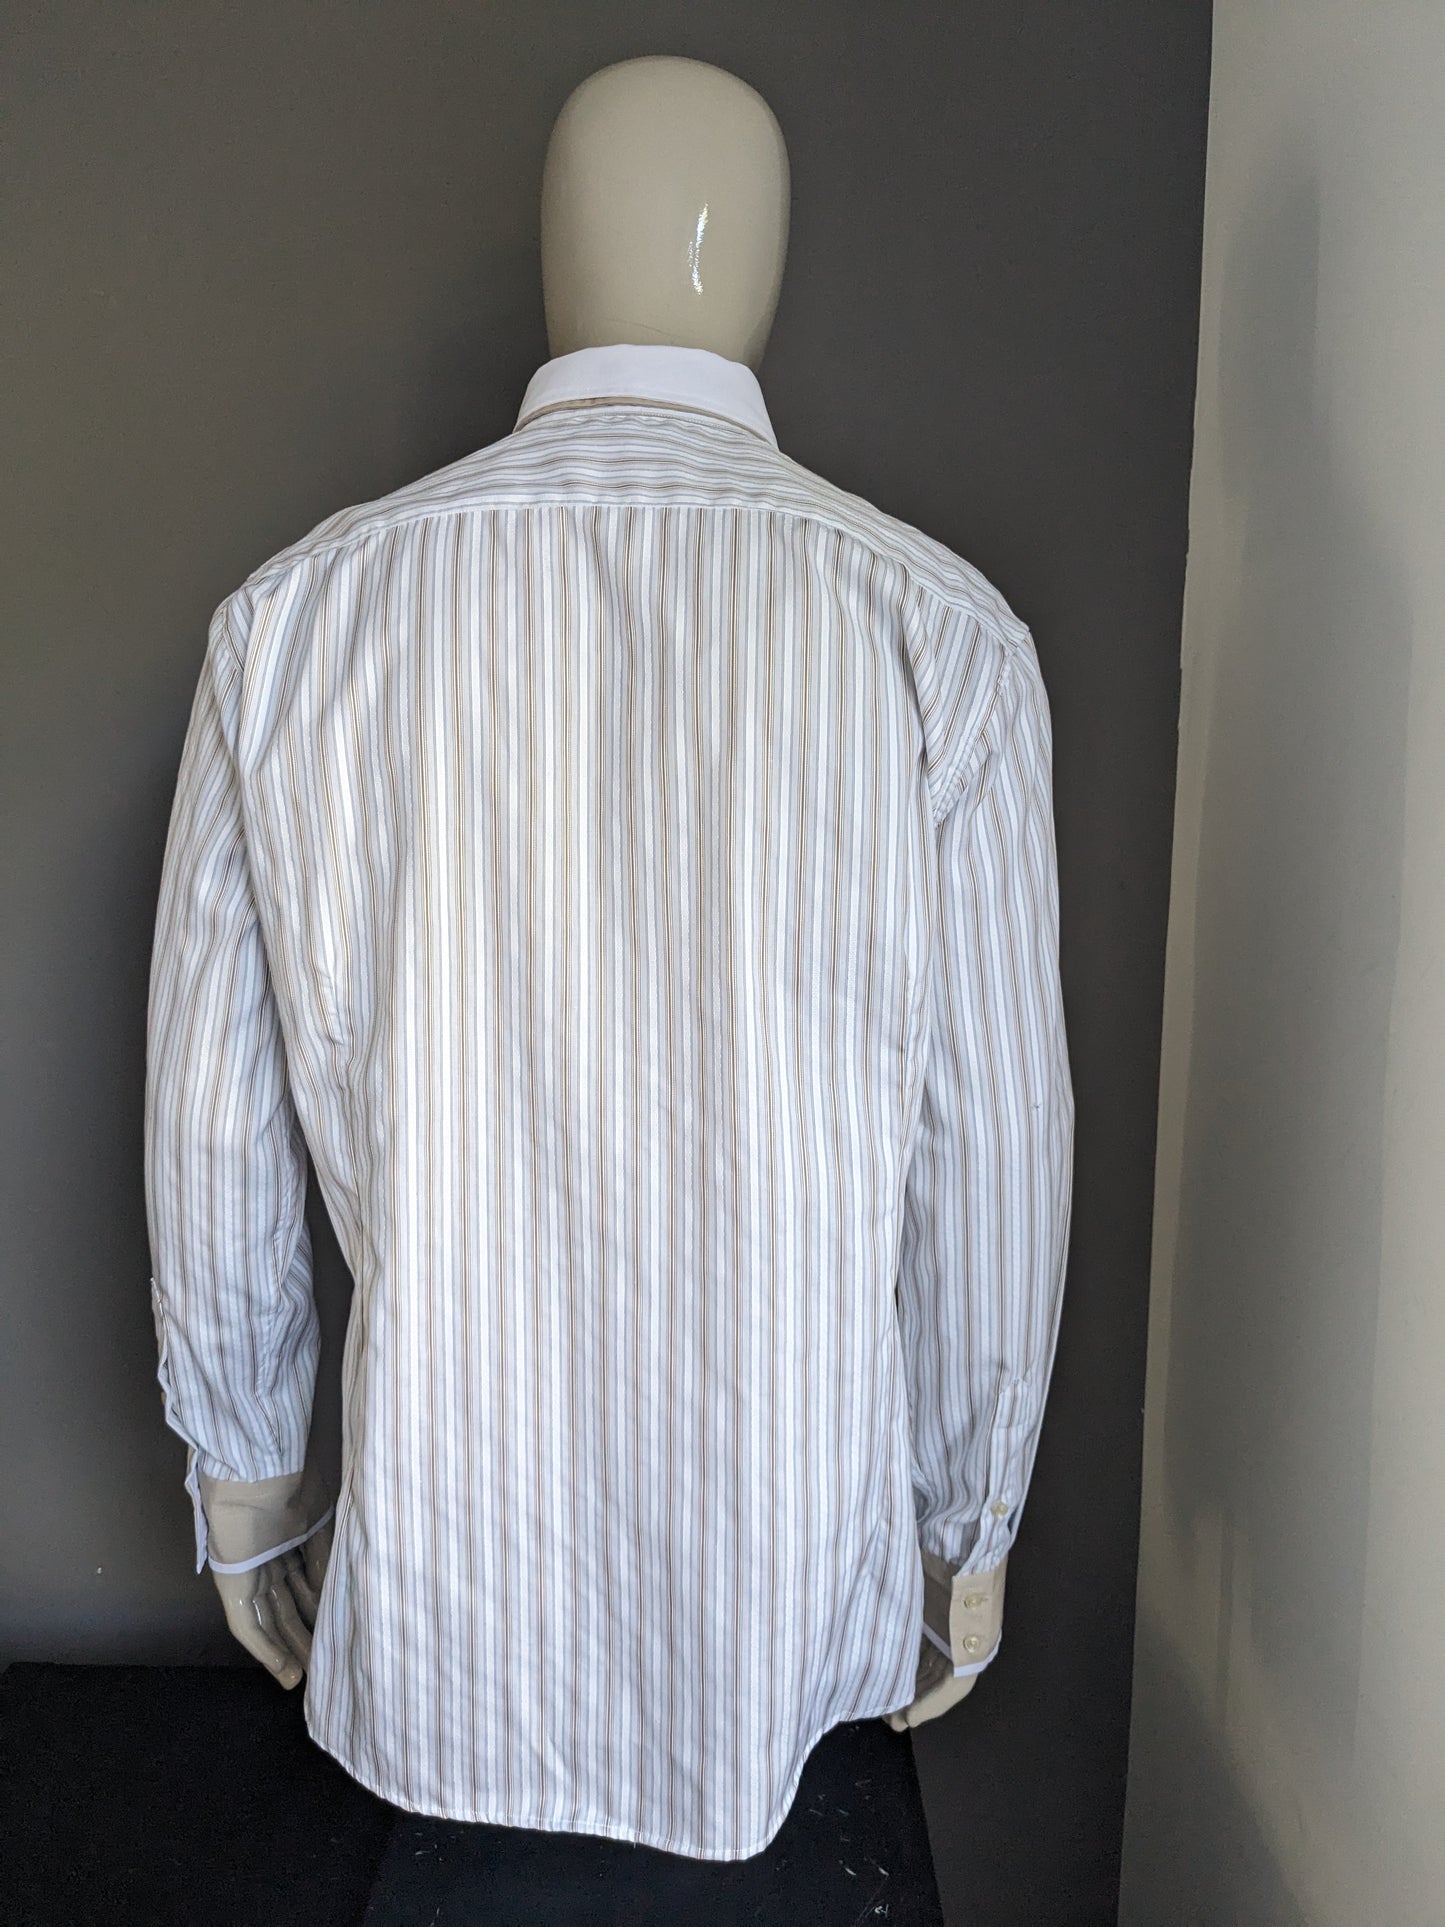 Camicia Turunç con doppio colletto. Strisce marrone blu bianco. Dimensione XL / XXL.